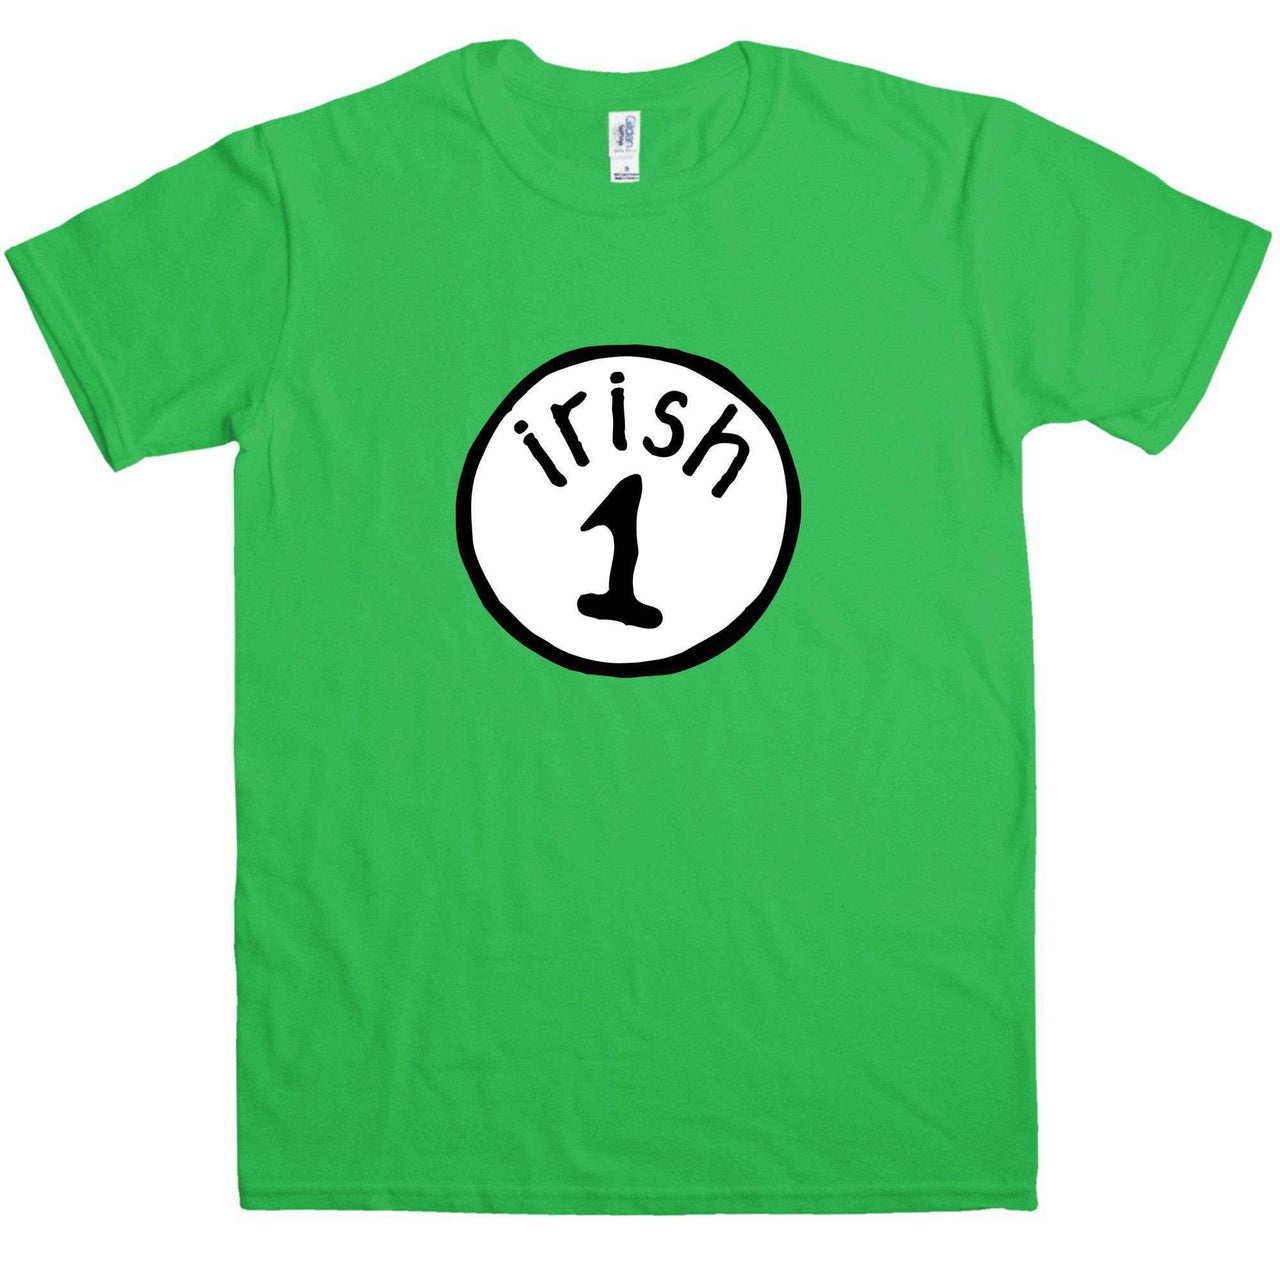 Saint Patrick's Day Irish 1 Graphic T-Shirt For Men 8Ball